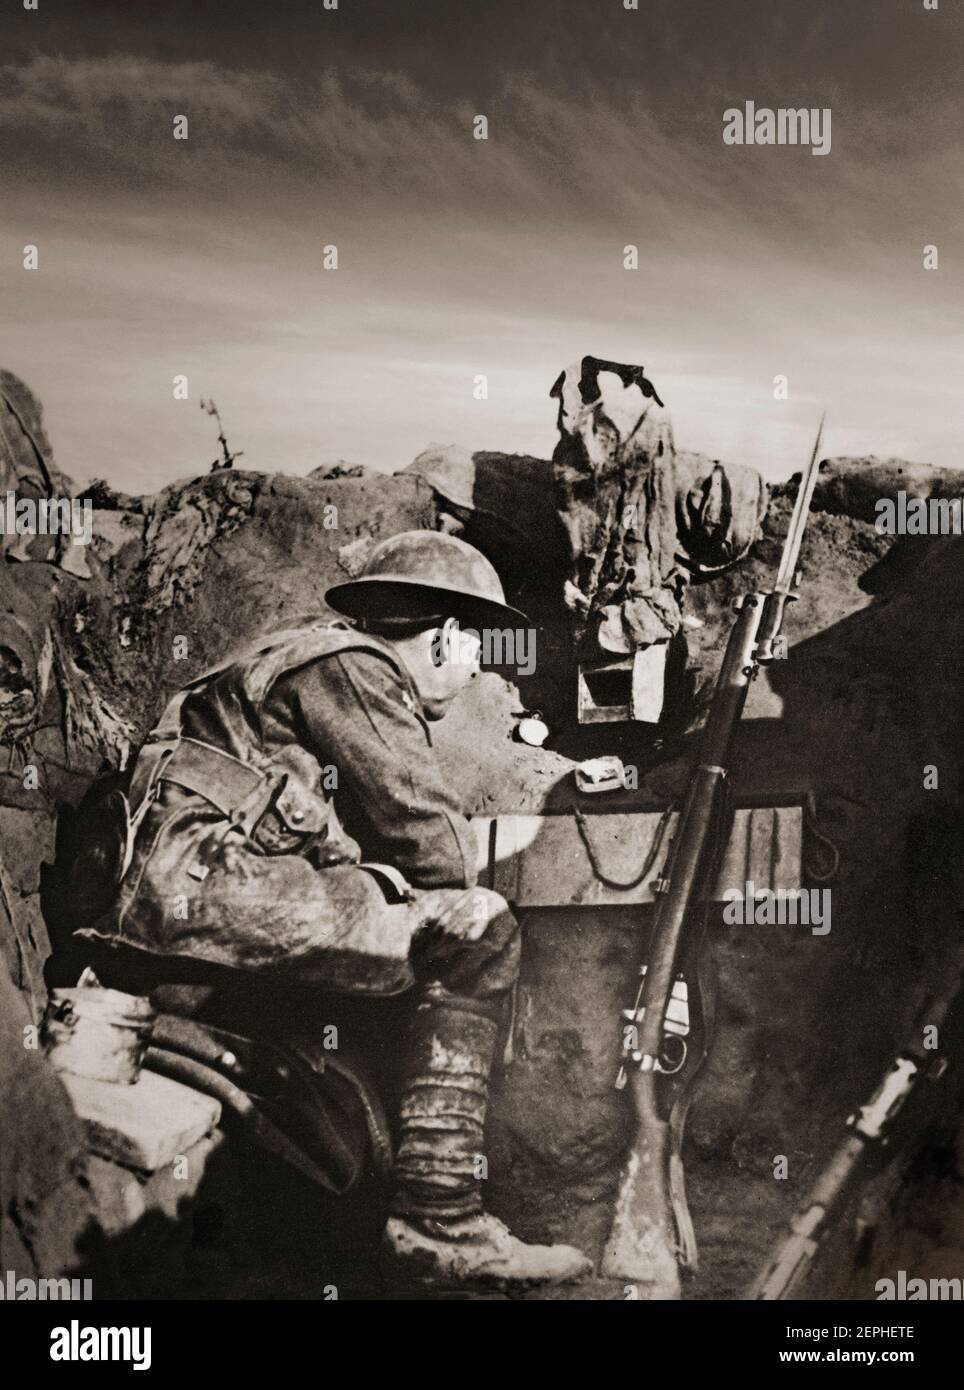 Un solitaire britannique Tommy ou soldat dans les tranchées pendant la première Guerre mondiale avec un court, Magazine Lee-Enfield Mk III fusil. Dans les mains de l'armée britannique, l'arme s'est révélée à la hauteur des conditions de service exigeantes de la Grande Guerre. Banque D'Images